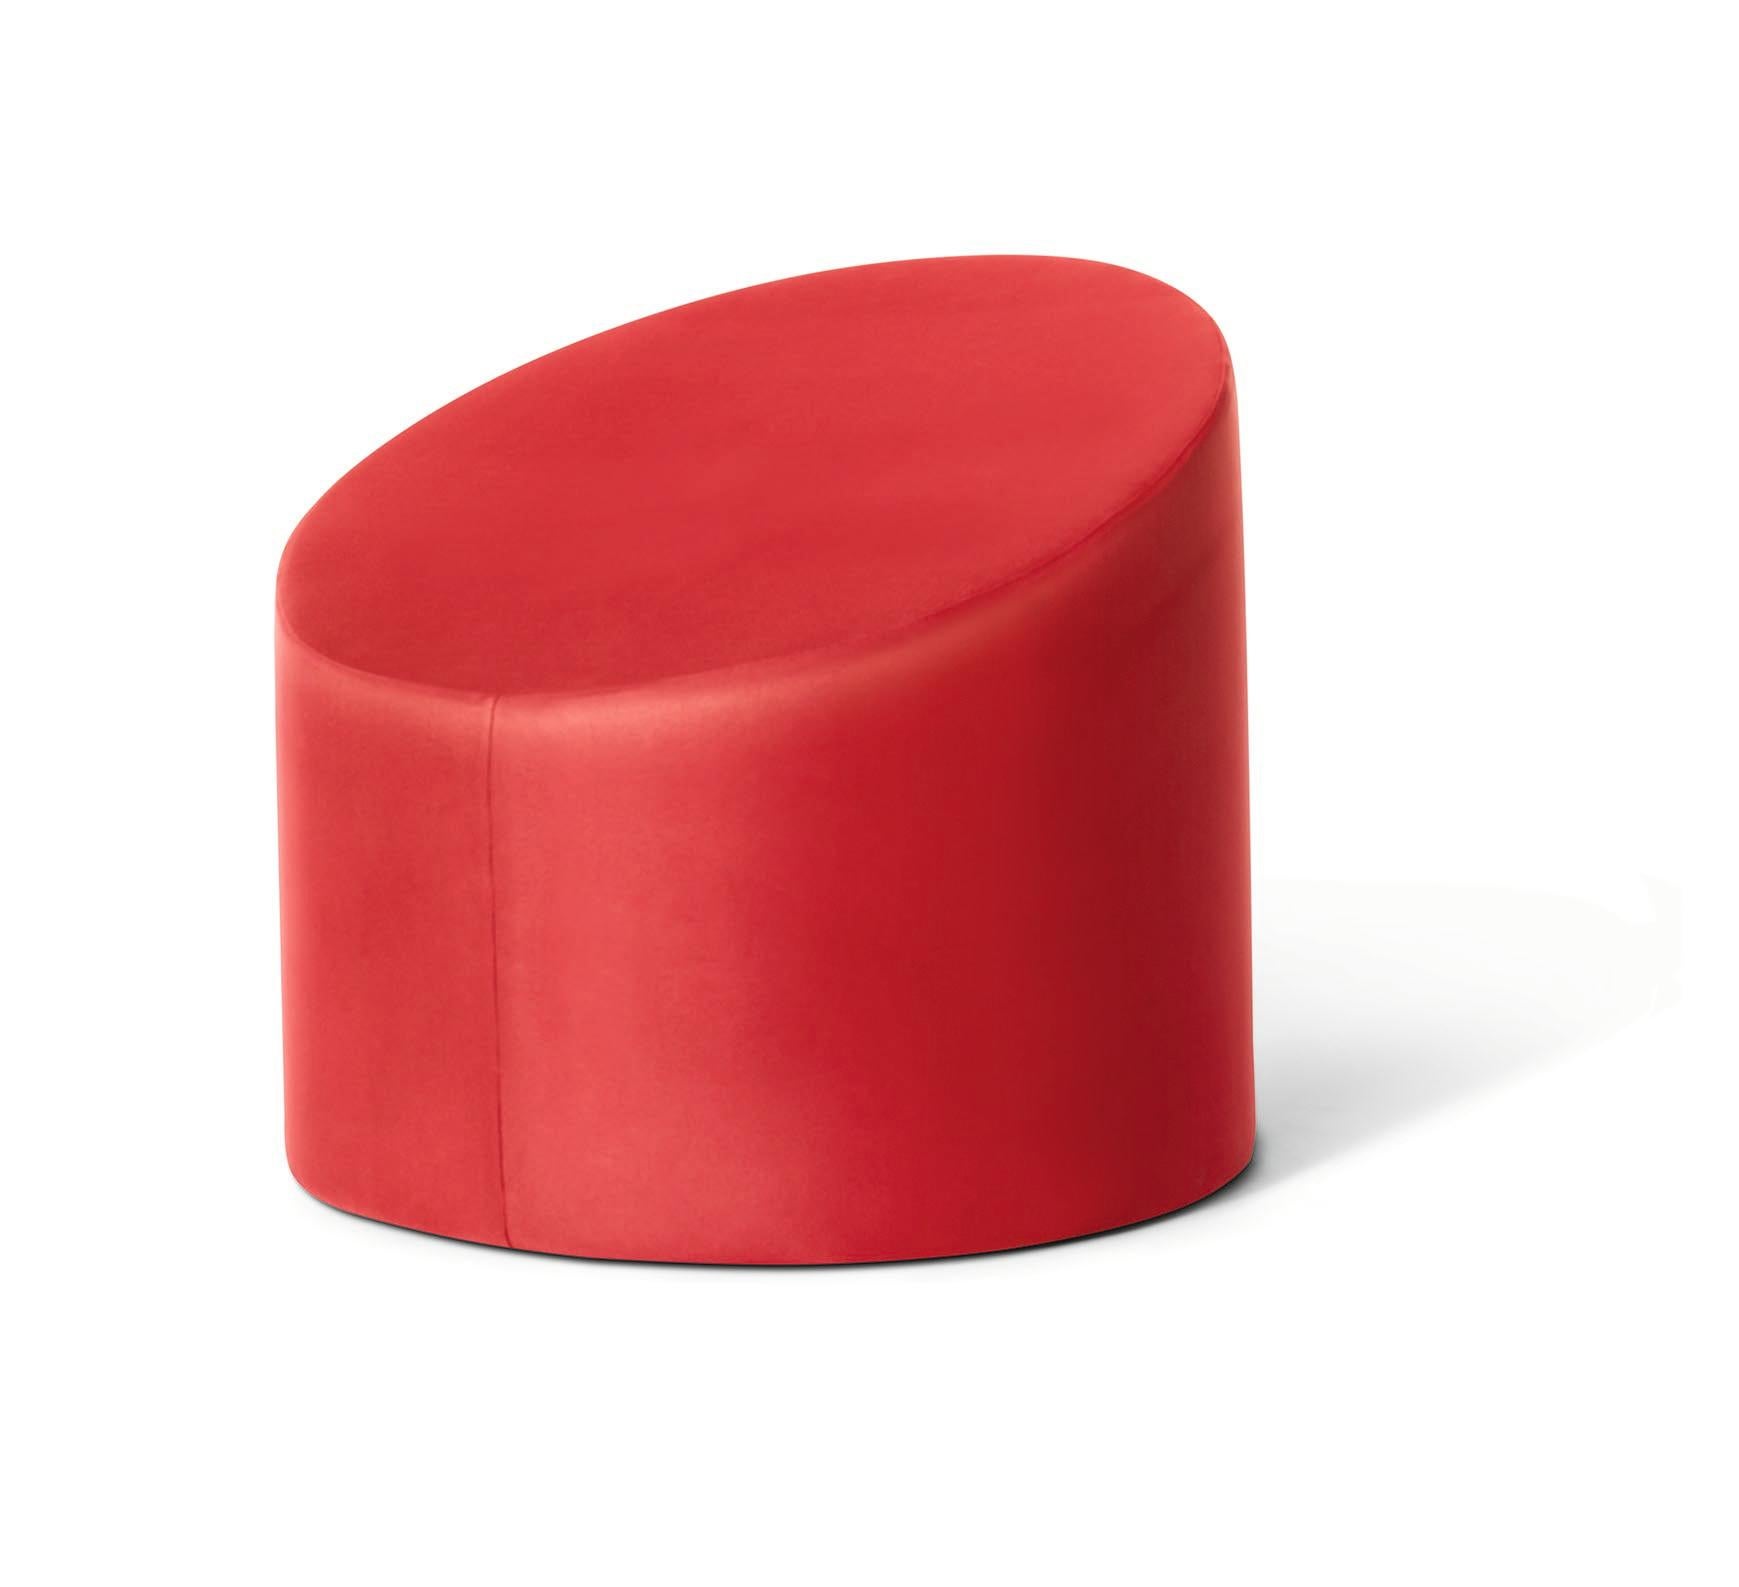 For Sale: Red GUFRAM Mozza Stool & Chair by Giuseppe Raimondi